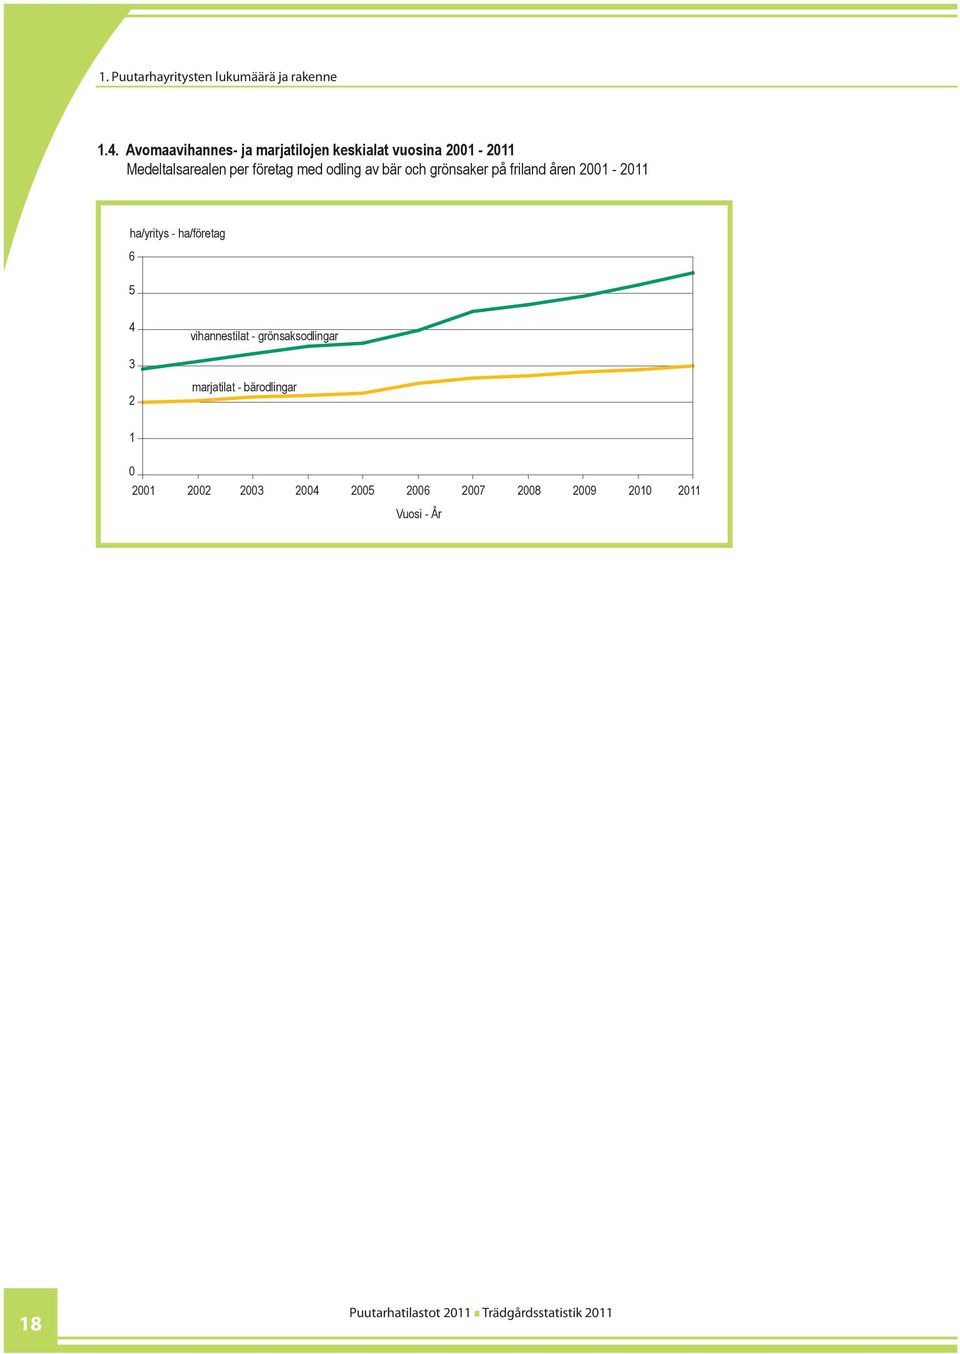 Medeltalsarealen per företag med odling av bär och grönsaker på friland åren 2001-2011